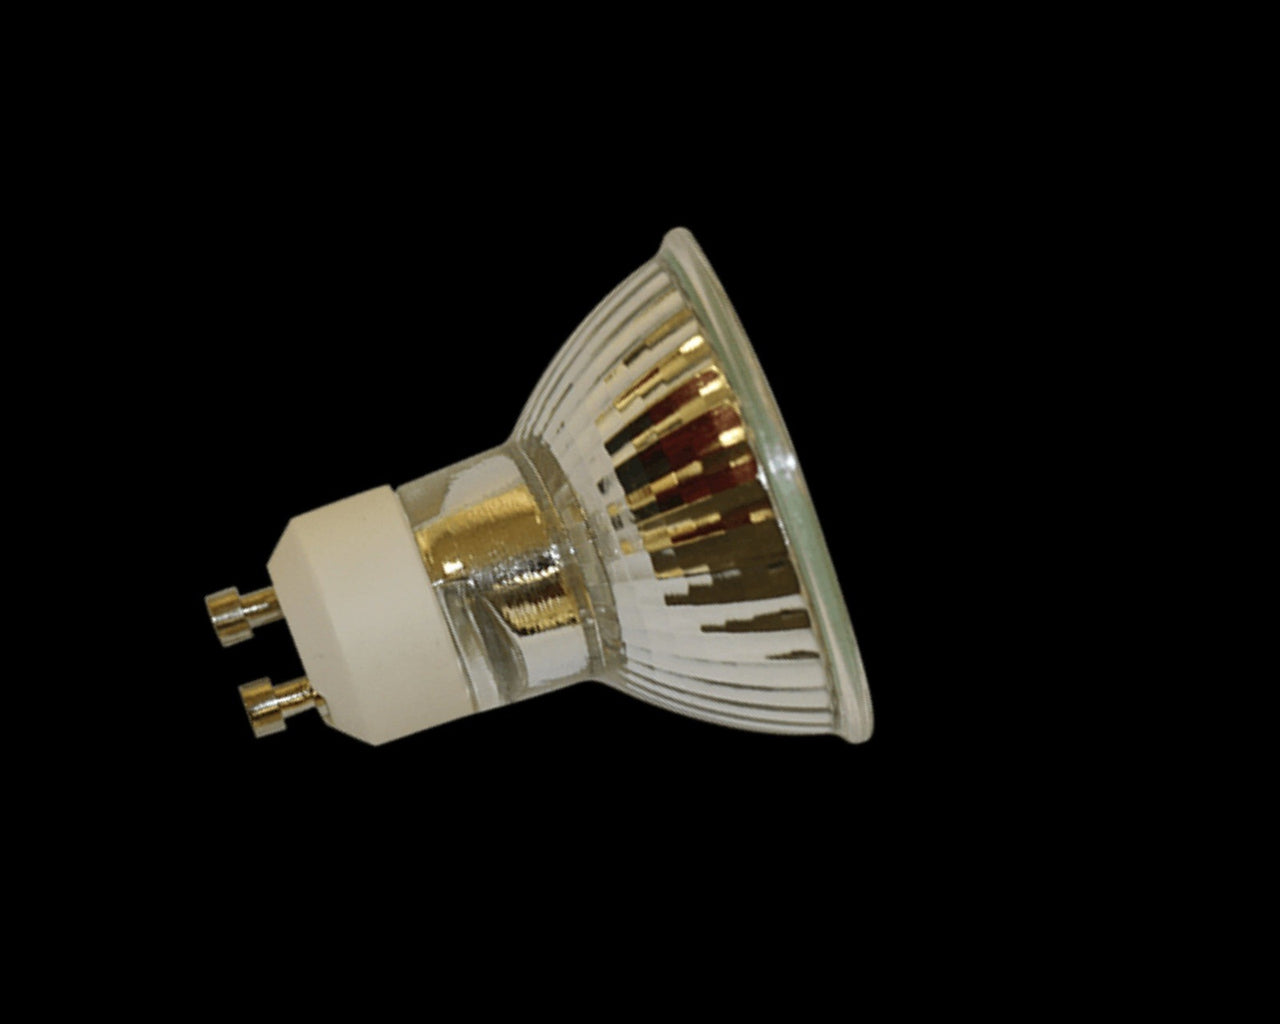 NP5 replacement heat halogen lamp 25 watts